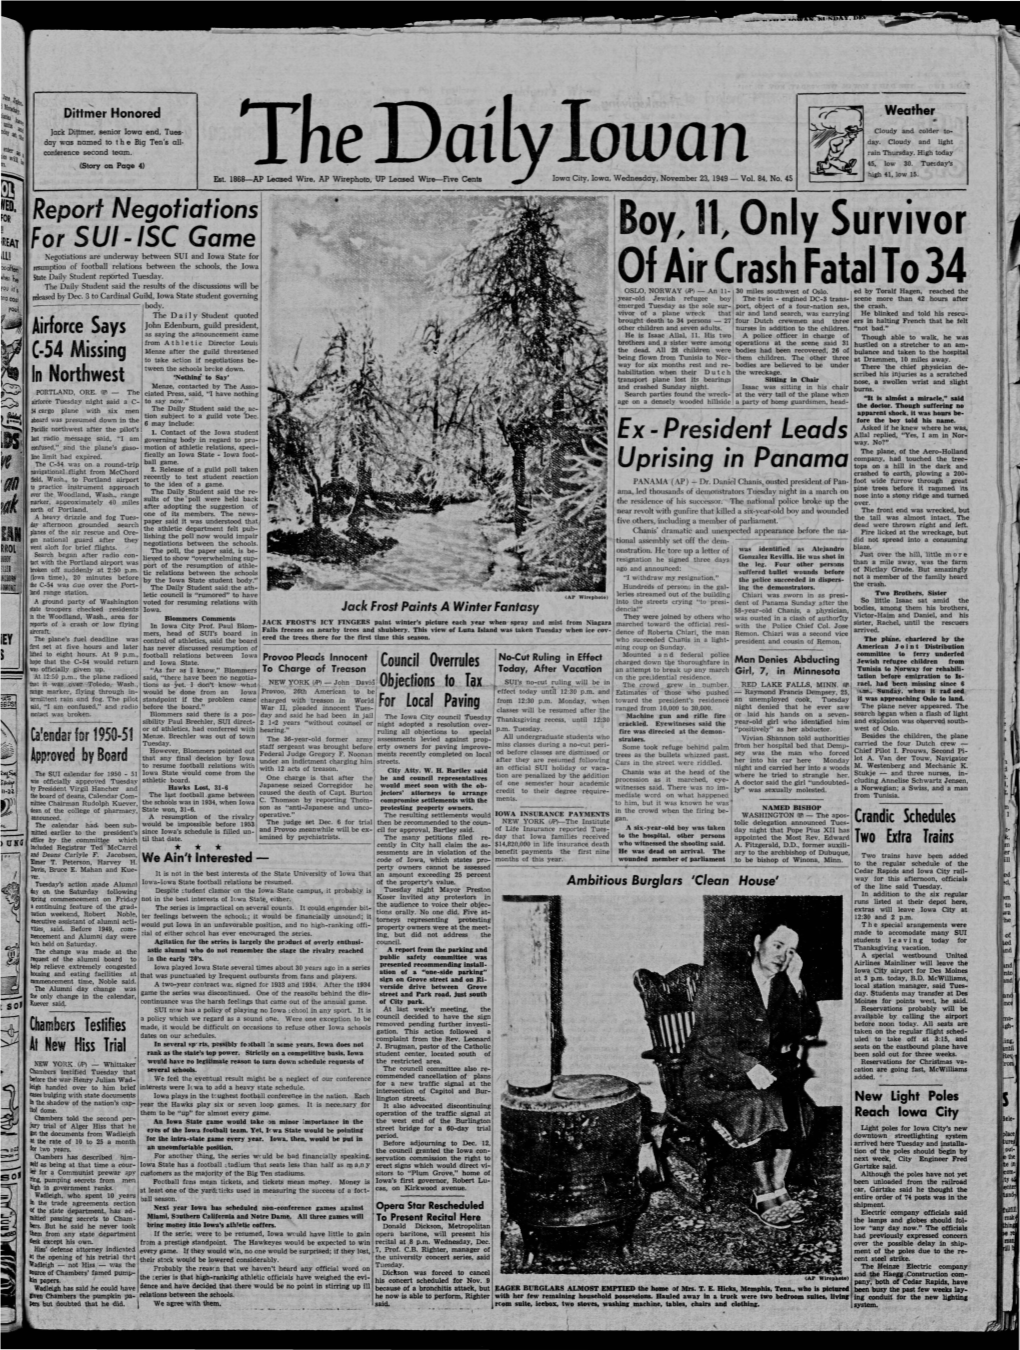 Daily Iowan (Iowa City, Iowa), 1949-11-23